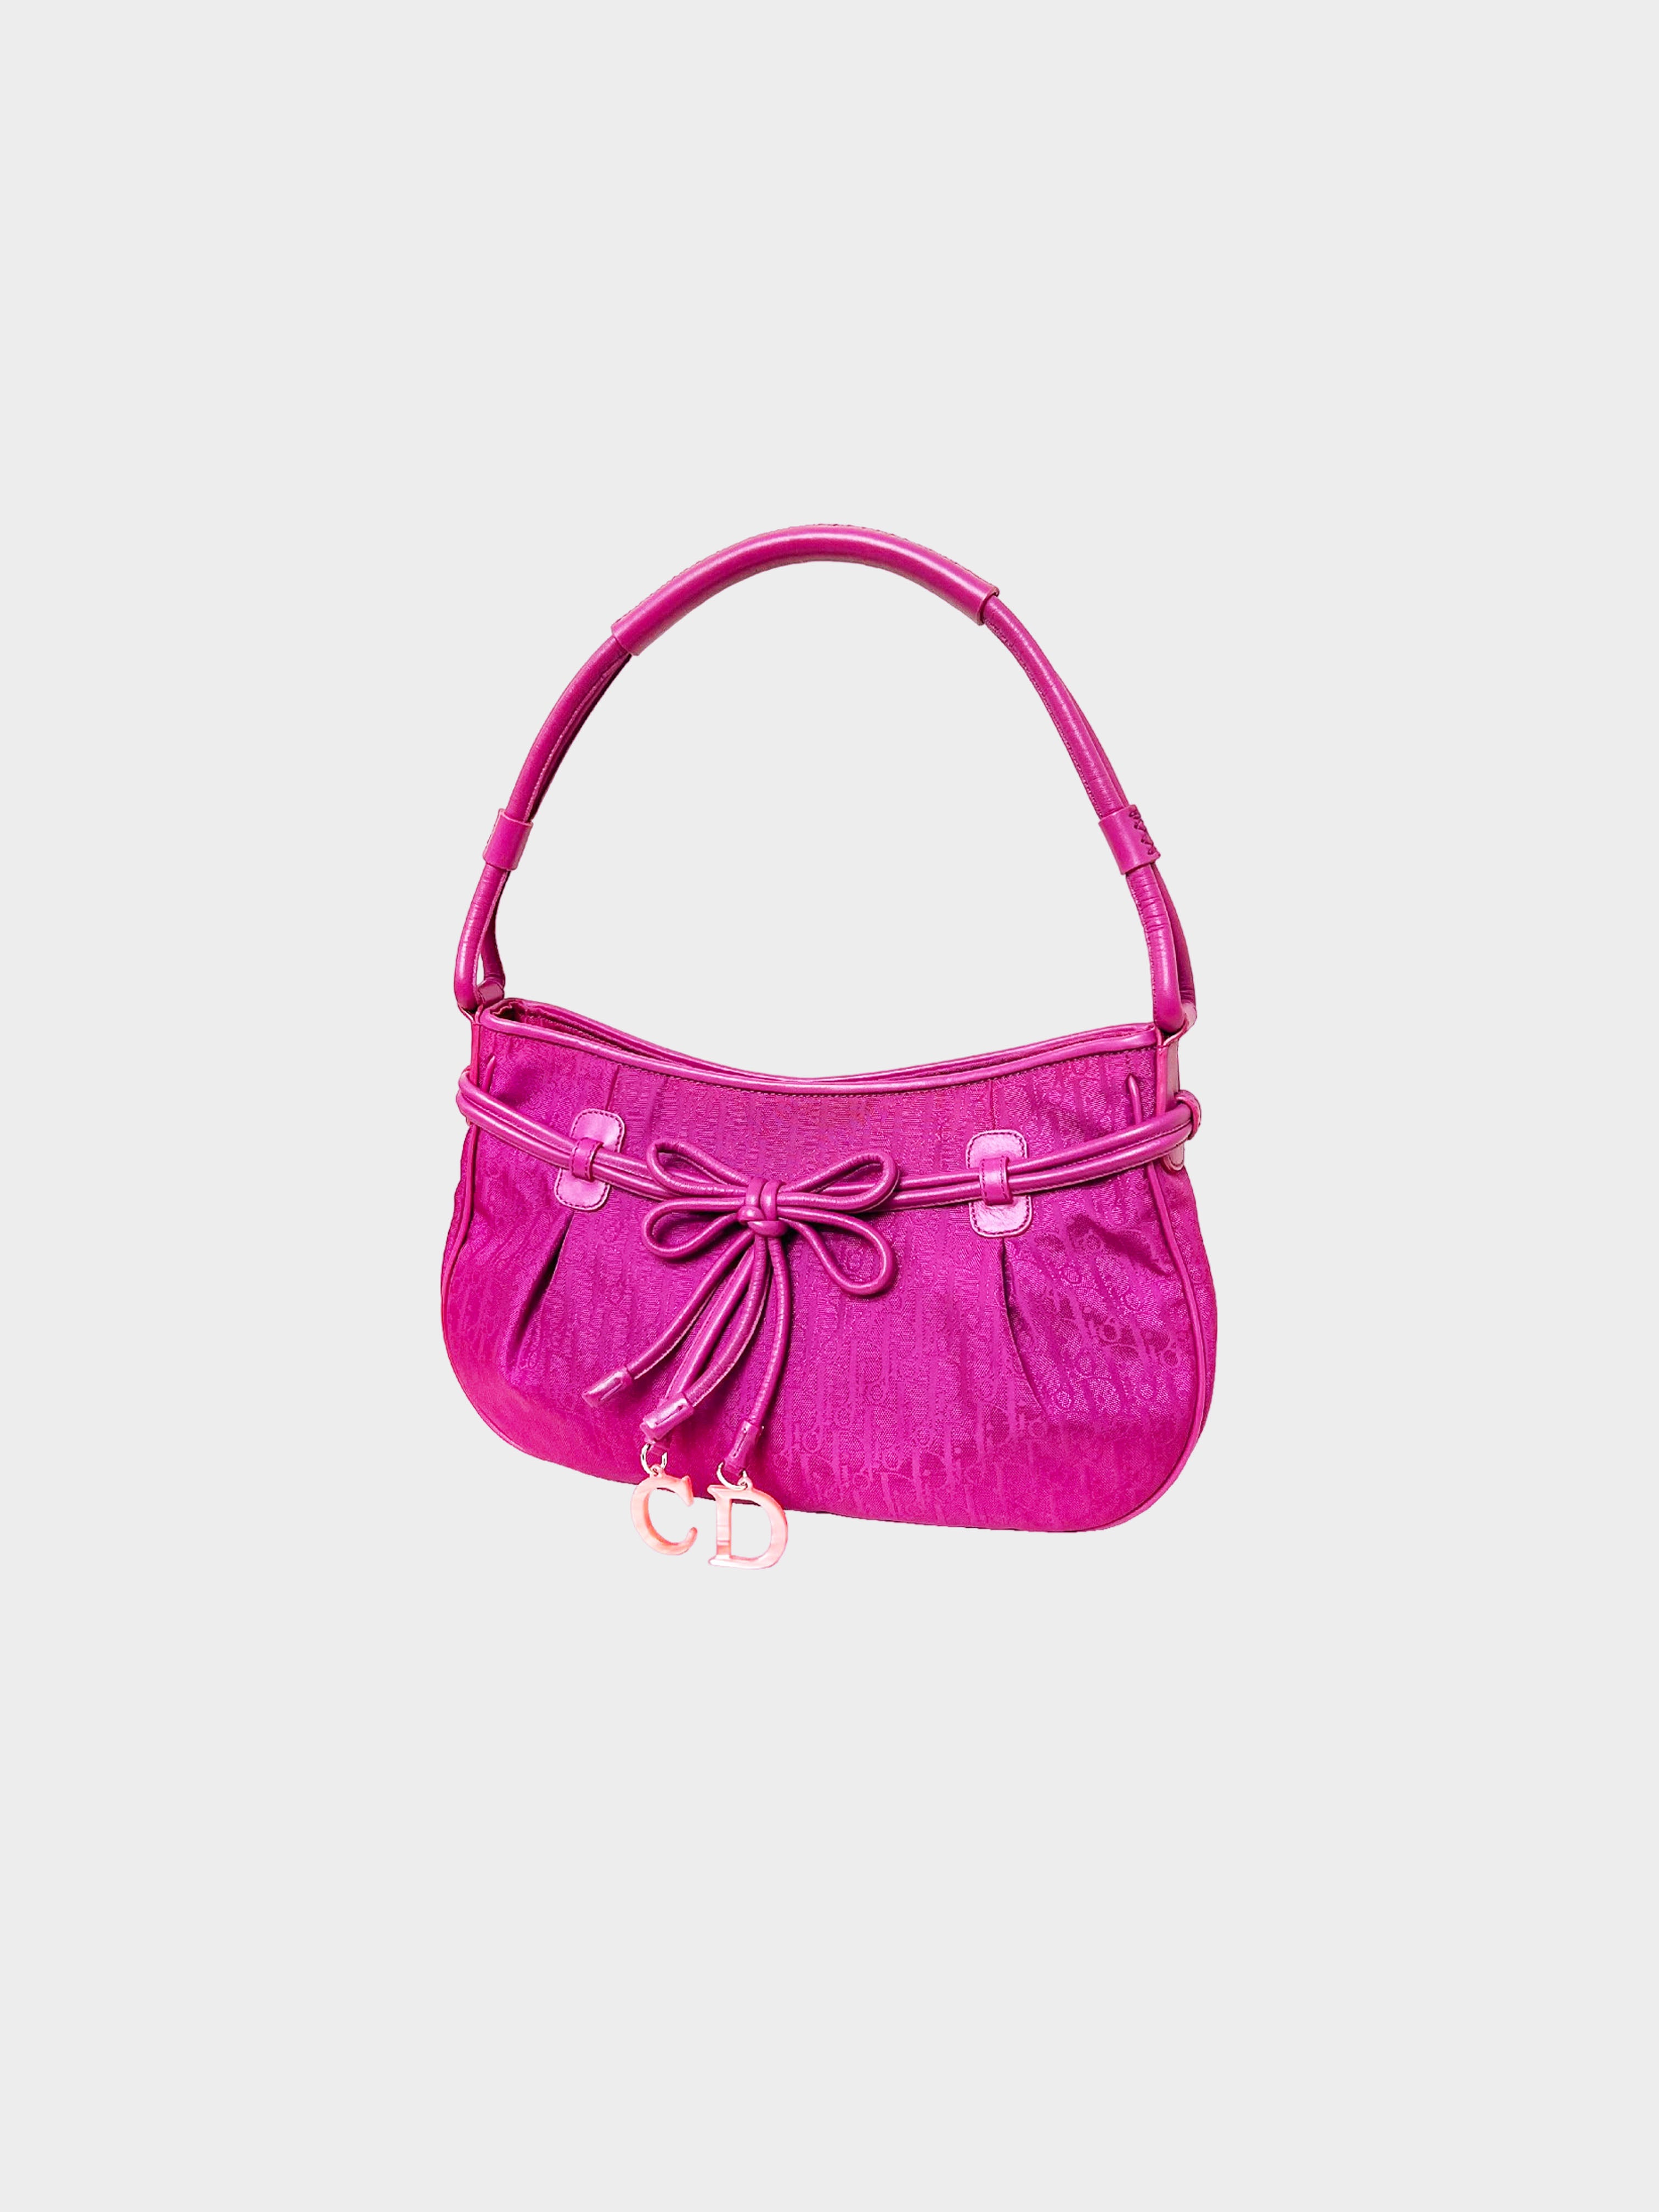 Christian Dior 2008 Pink Trotter Bow Charm Handbag